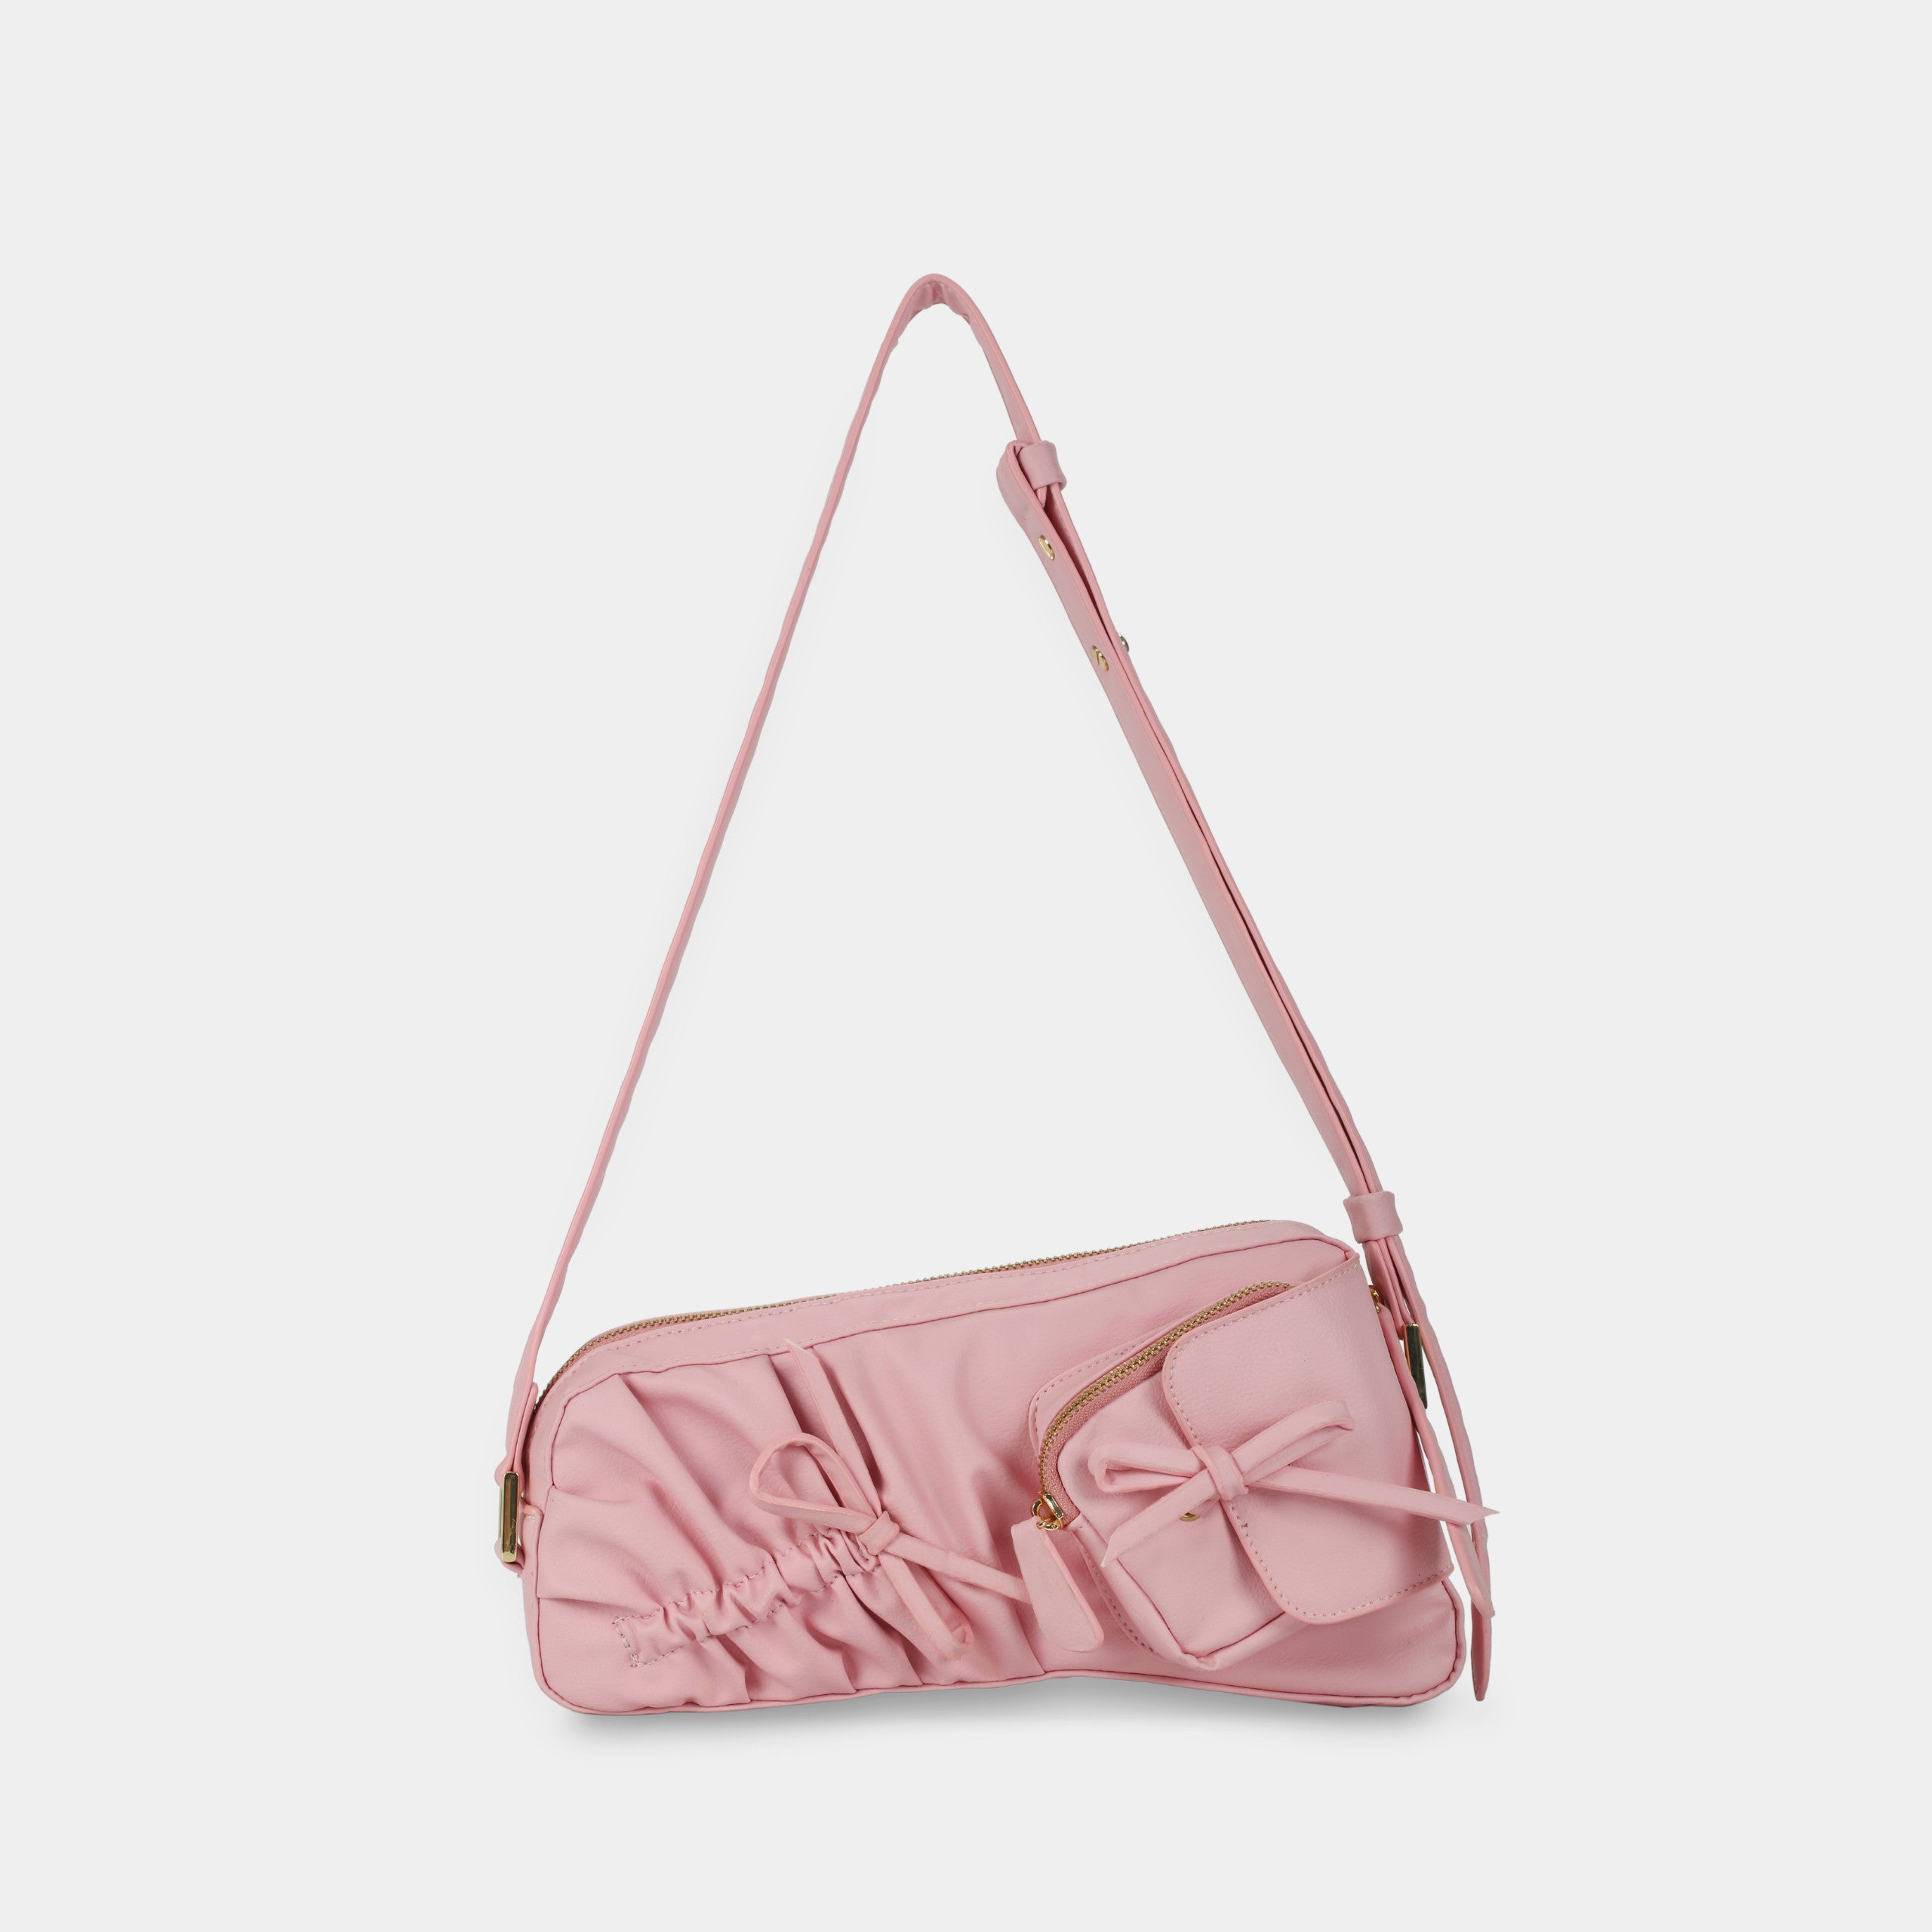 Túi xách FREELY màu hồng